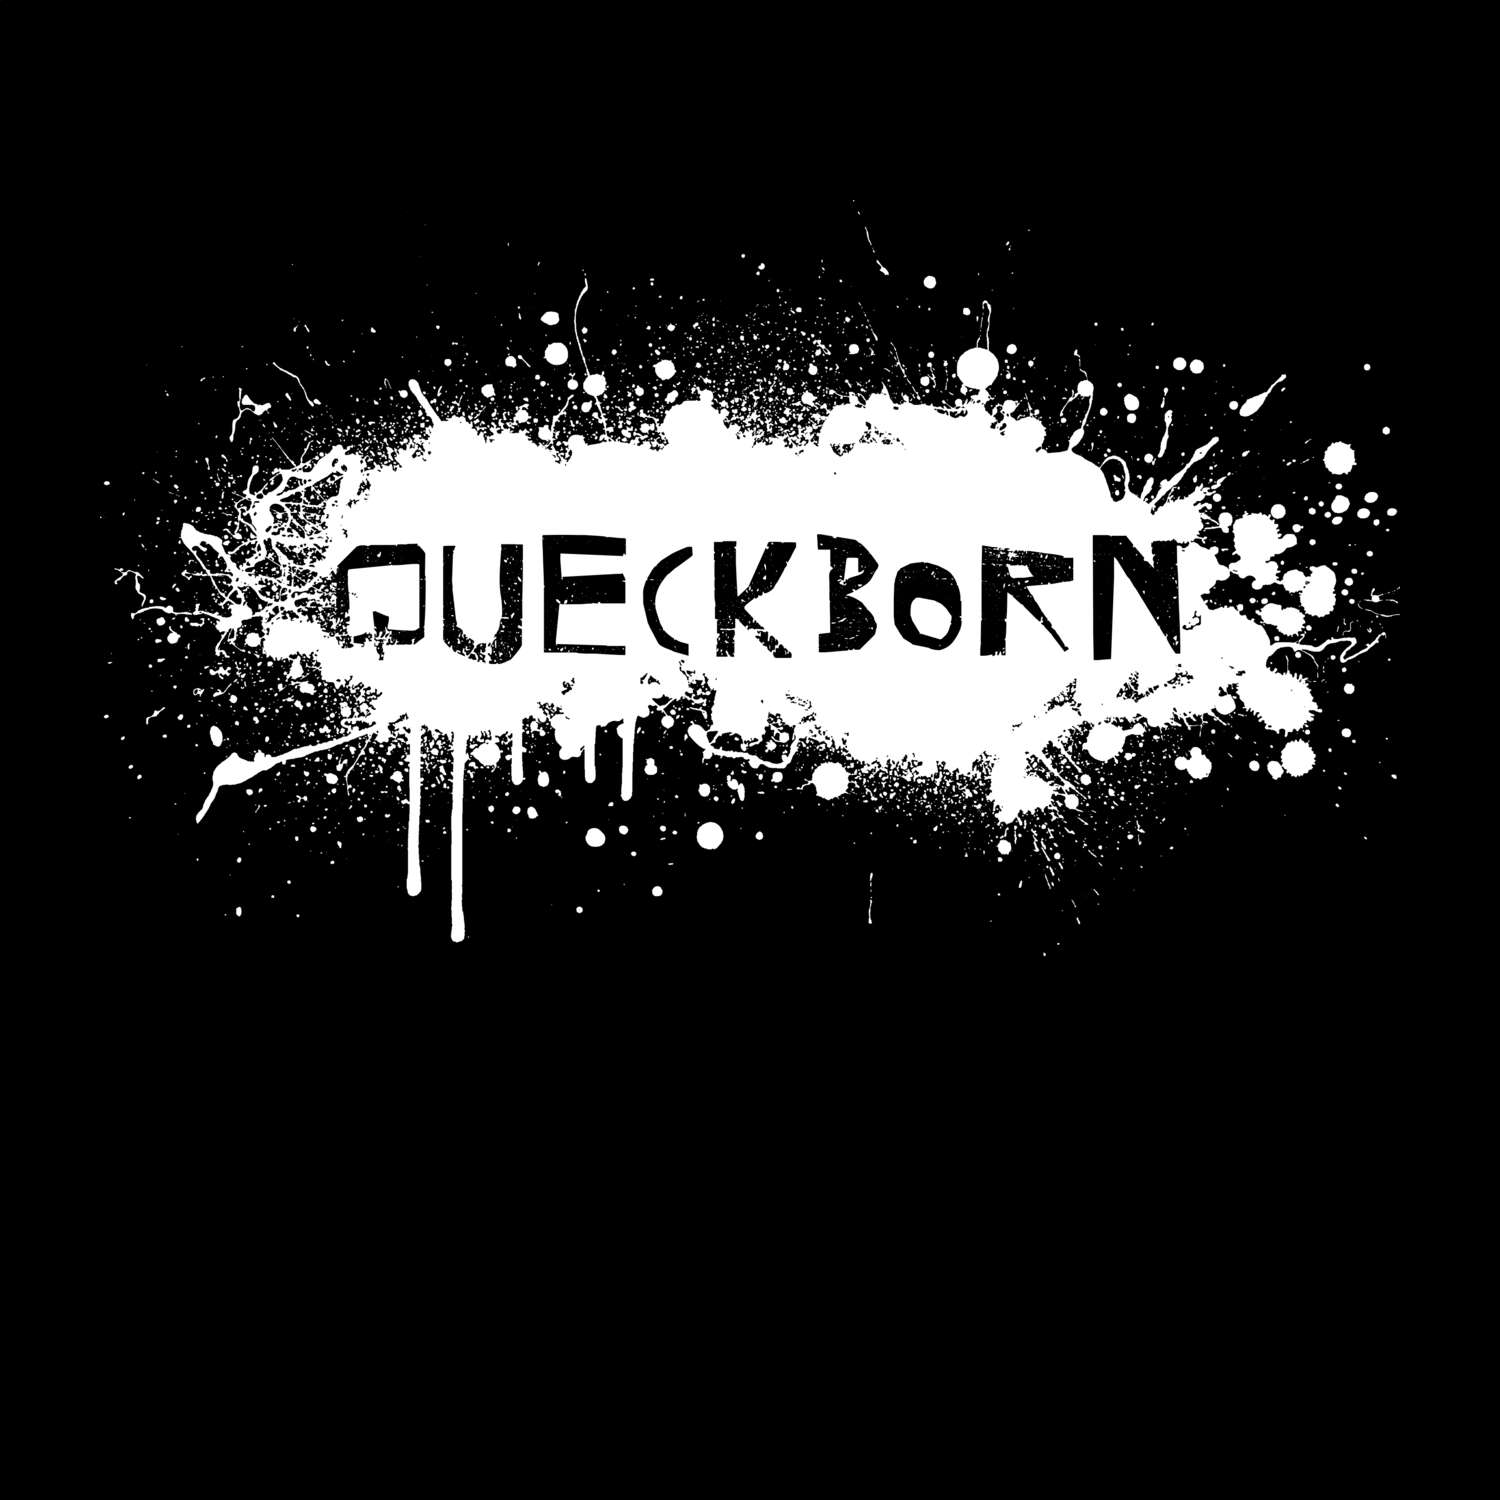 Queckborn T-Shirt »Paint Splash Punk«